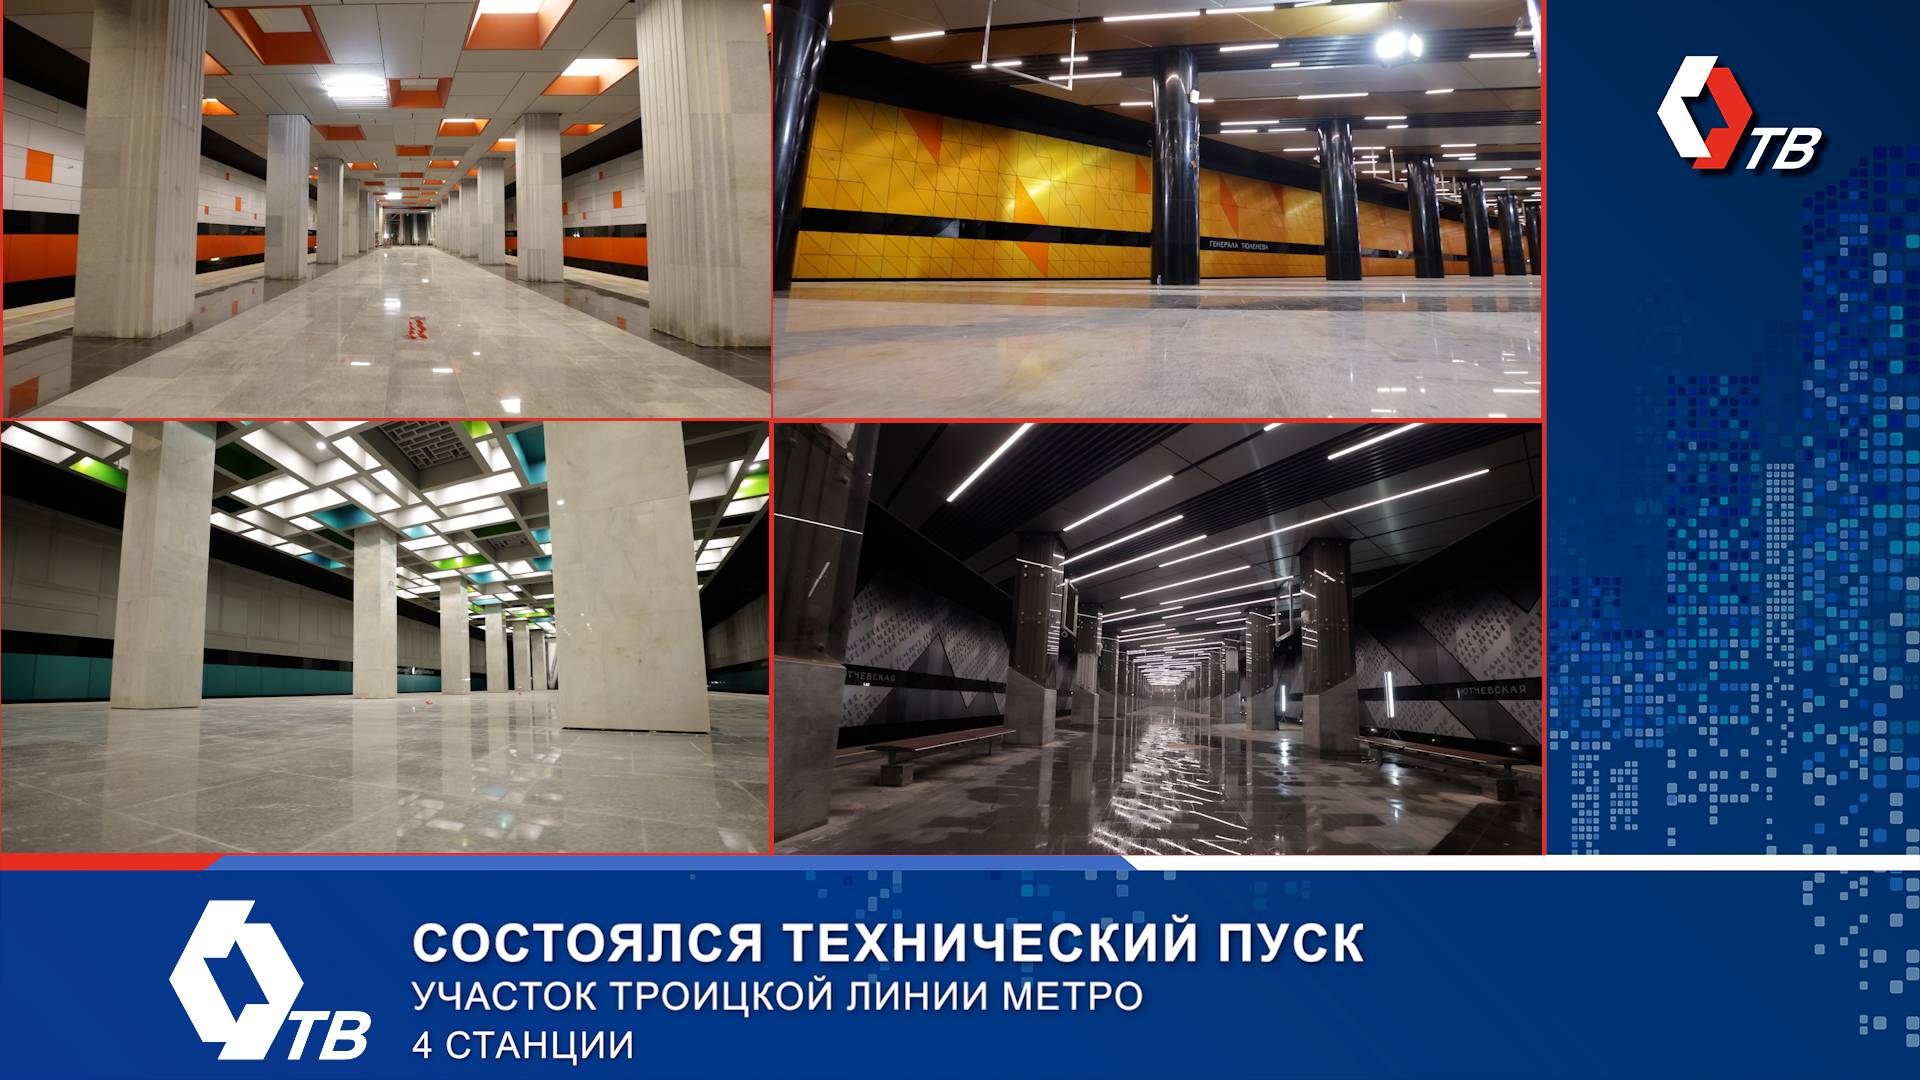 Первый участок Троицкой линии метро от «Новаторской» до «Тютчевской» готовится к запуску